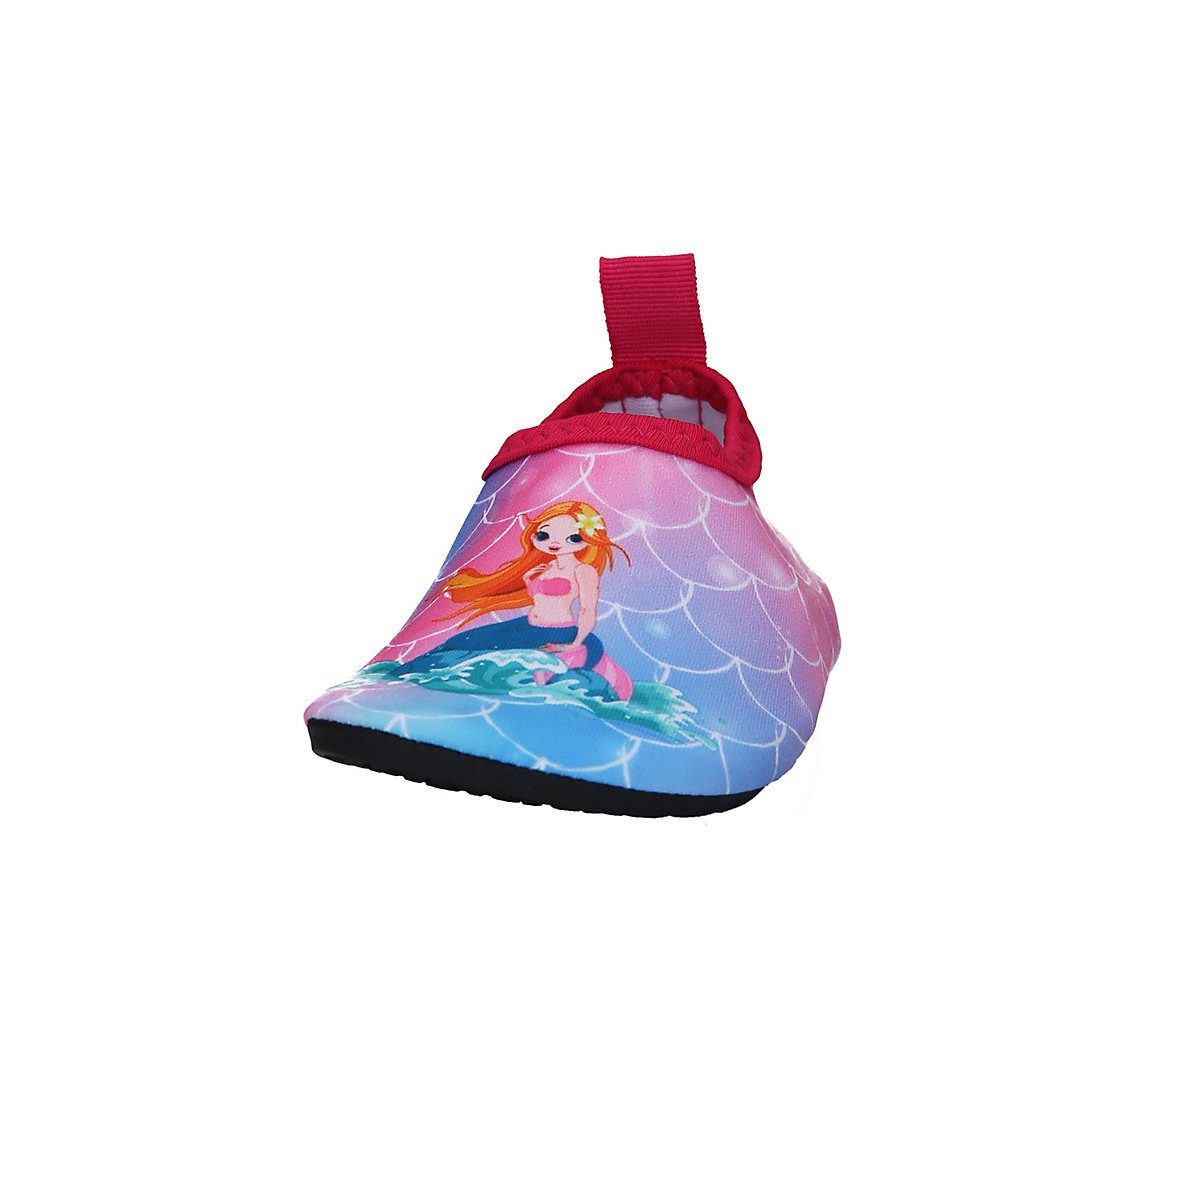 mit flexible Badeschuh rosa Barfuß-Schuh rutschhemmender Passform, Meerjungfrau Motiv Sohle Schwimmschuhe, Playshoes Badeschuhe Wasserschuhe